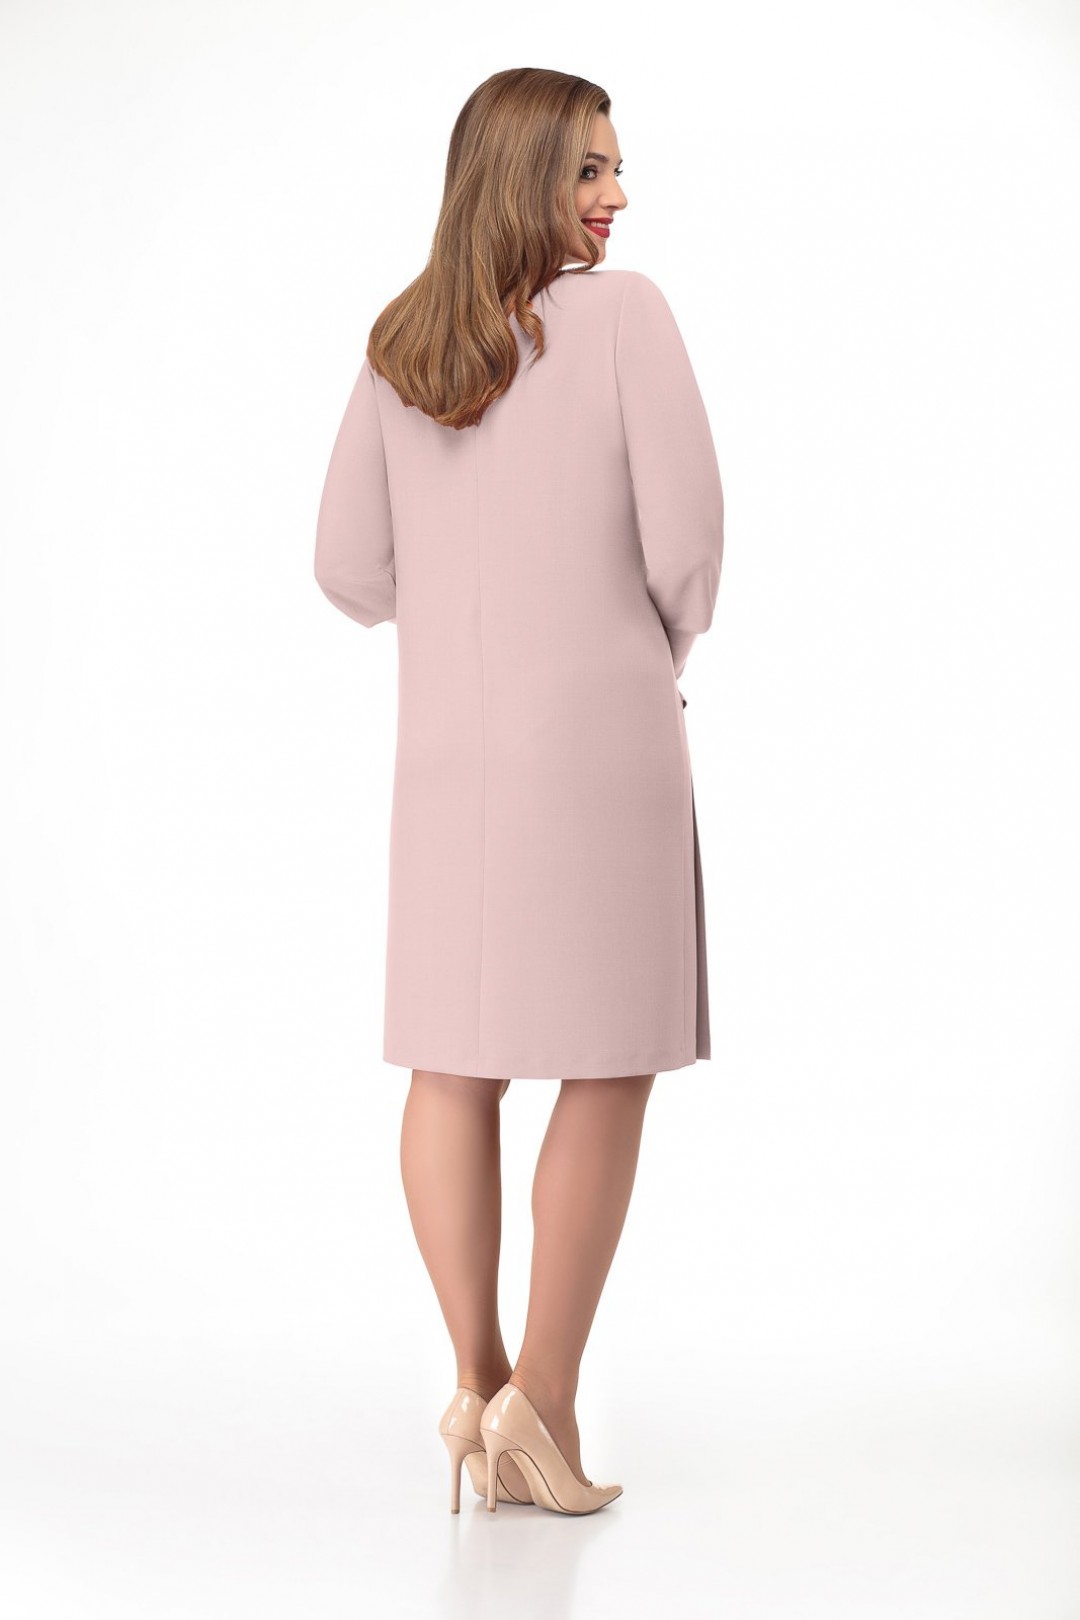 Платье Кокетка и К 756-1 бледно-розовый